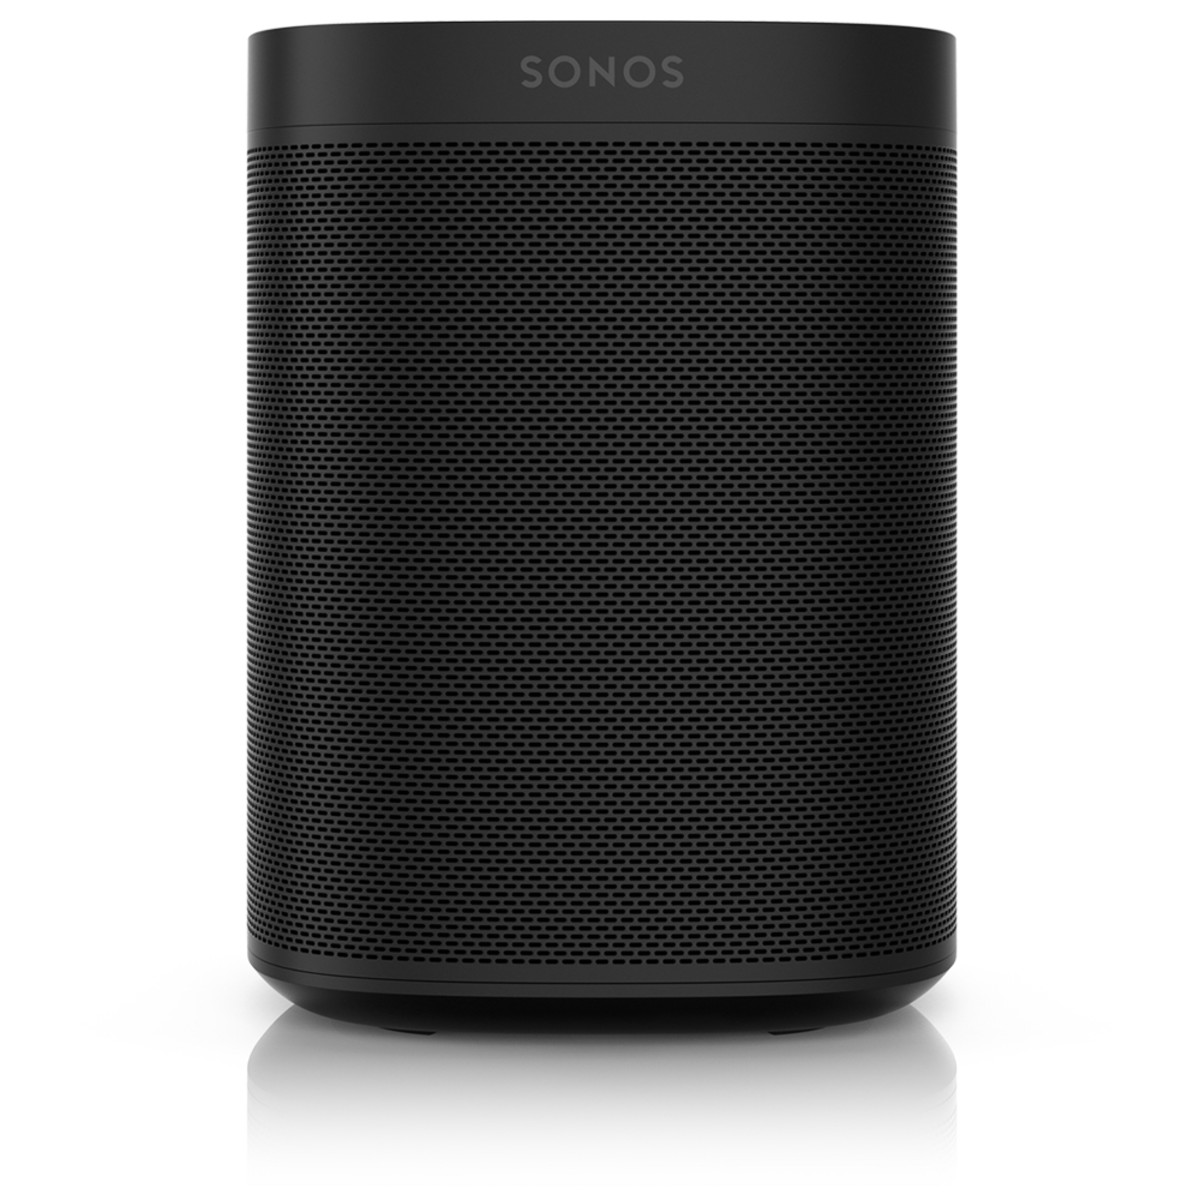 Sonos One with Amazon Alexa